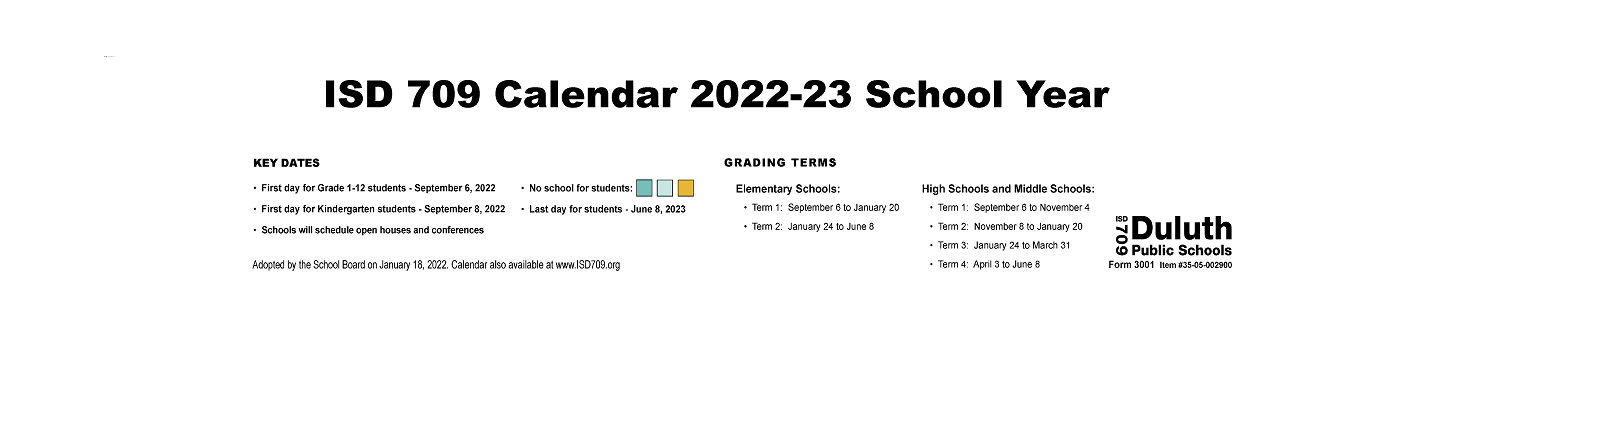 District School Academic Calendar Key for Pathways/teen Parent Program